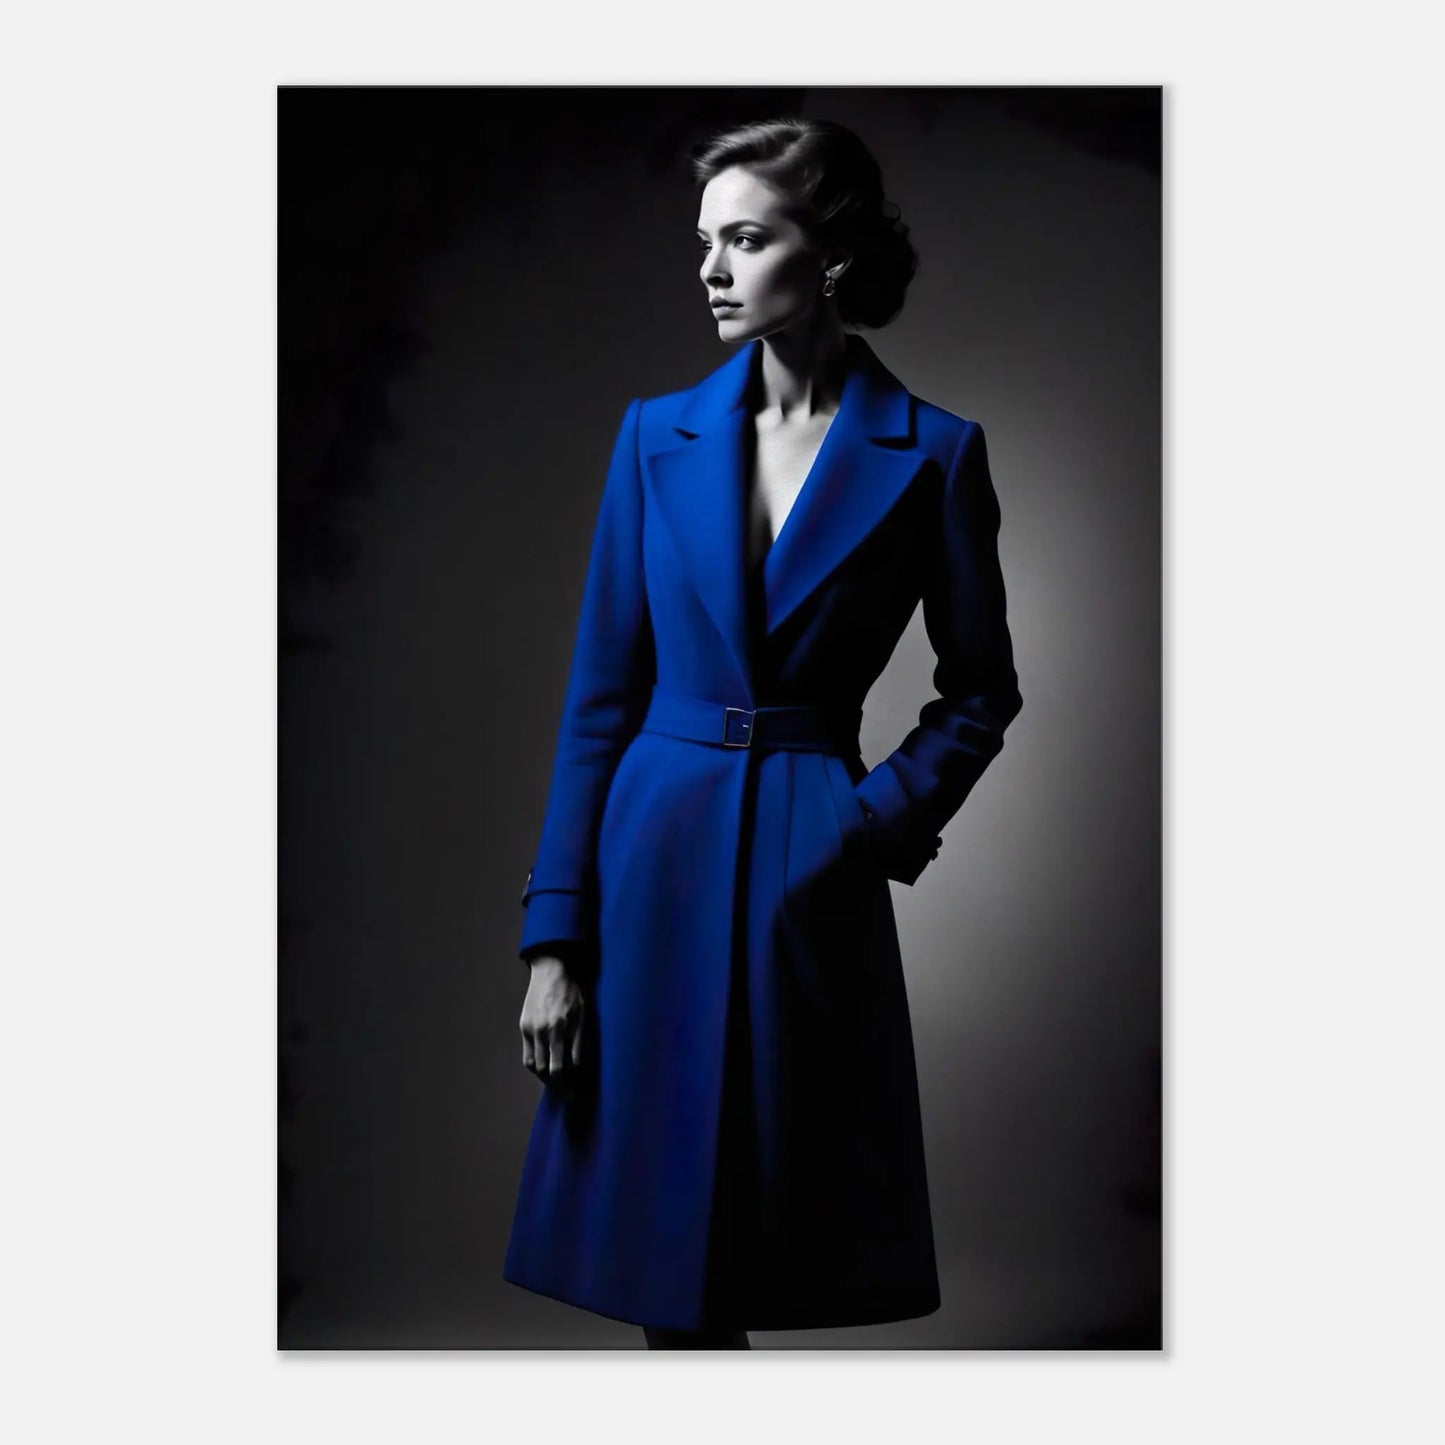 Leinwandbild - Frau im blauen Mantel - Schwarz-Weiß Stil, KI-Kunst - RolConArt, Schwarz-Weiß mit Akzentfarben, 70x100-cm-28x40